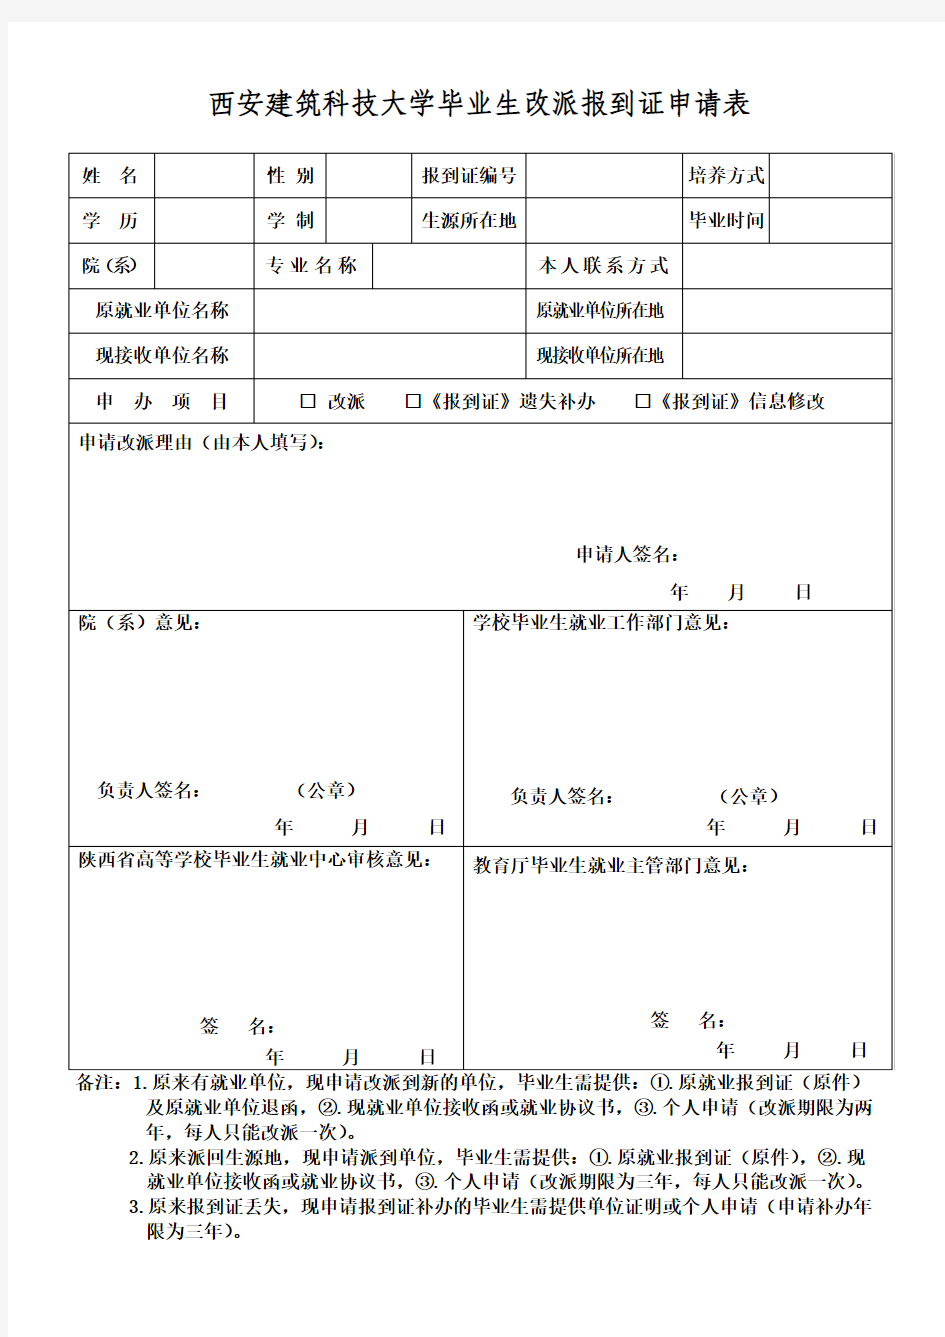 陕西省高校毕业生改派申请表(统一格式)